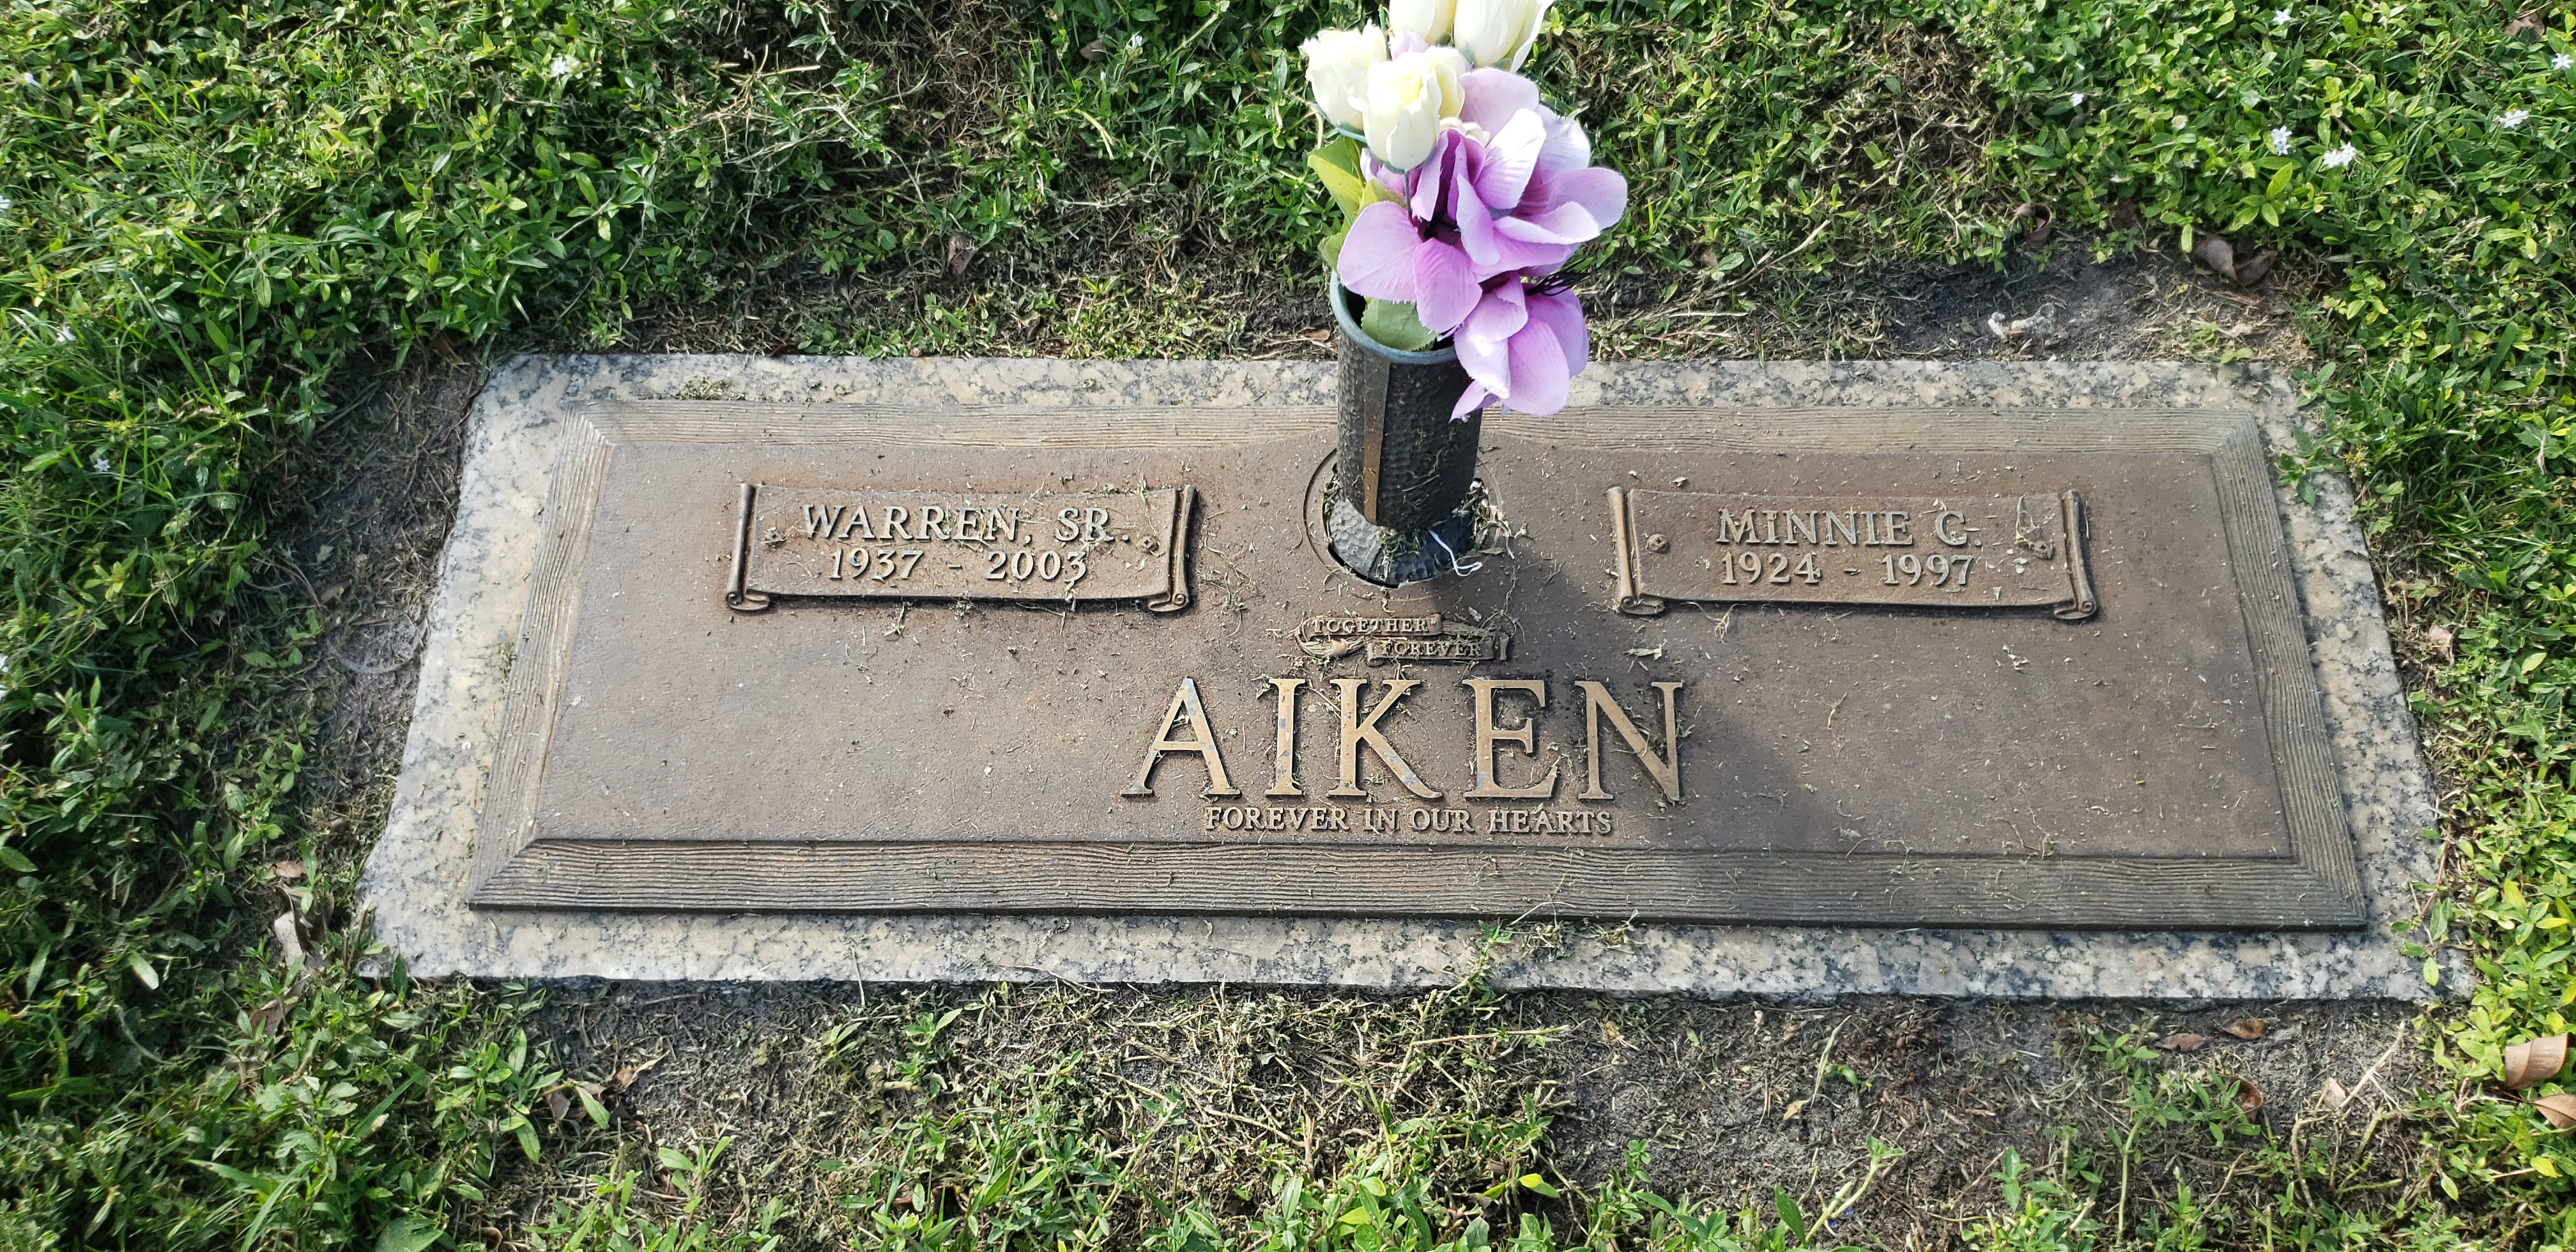 Warren Aiken, Sr